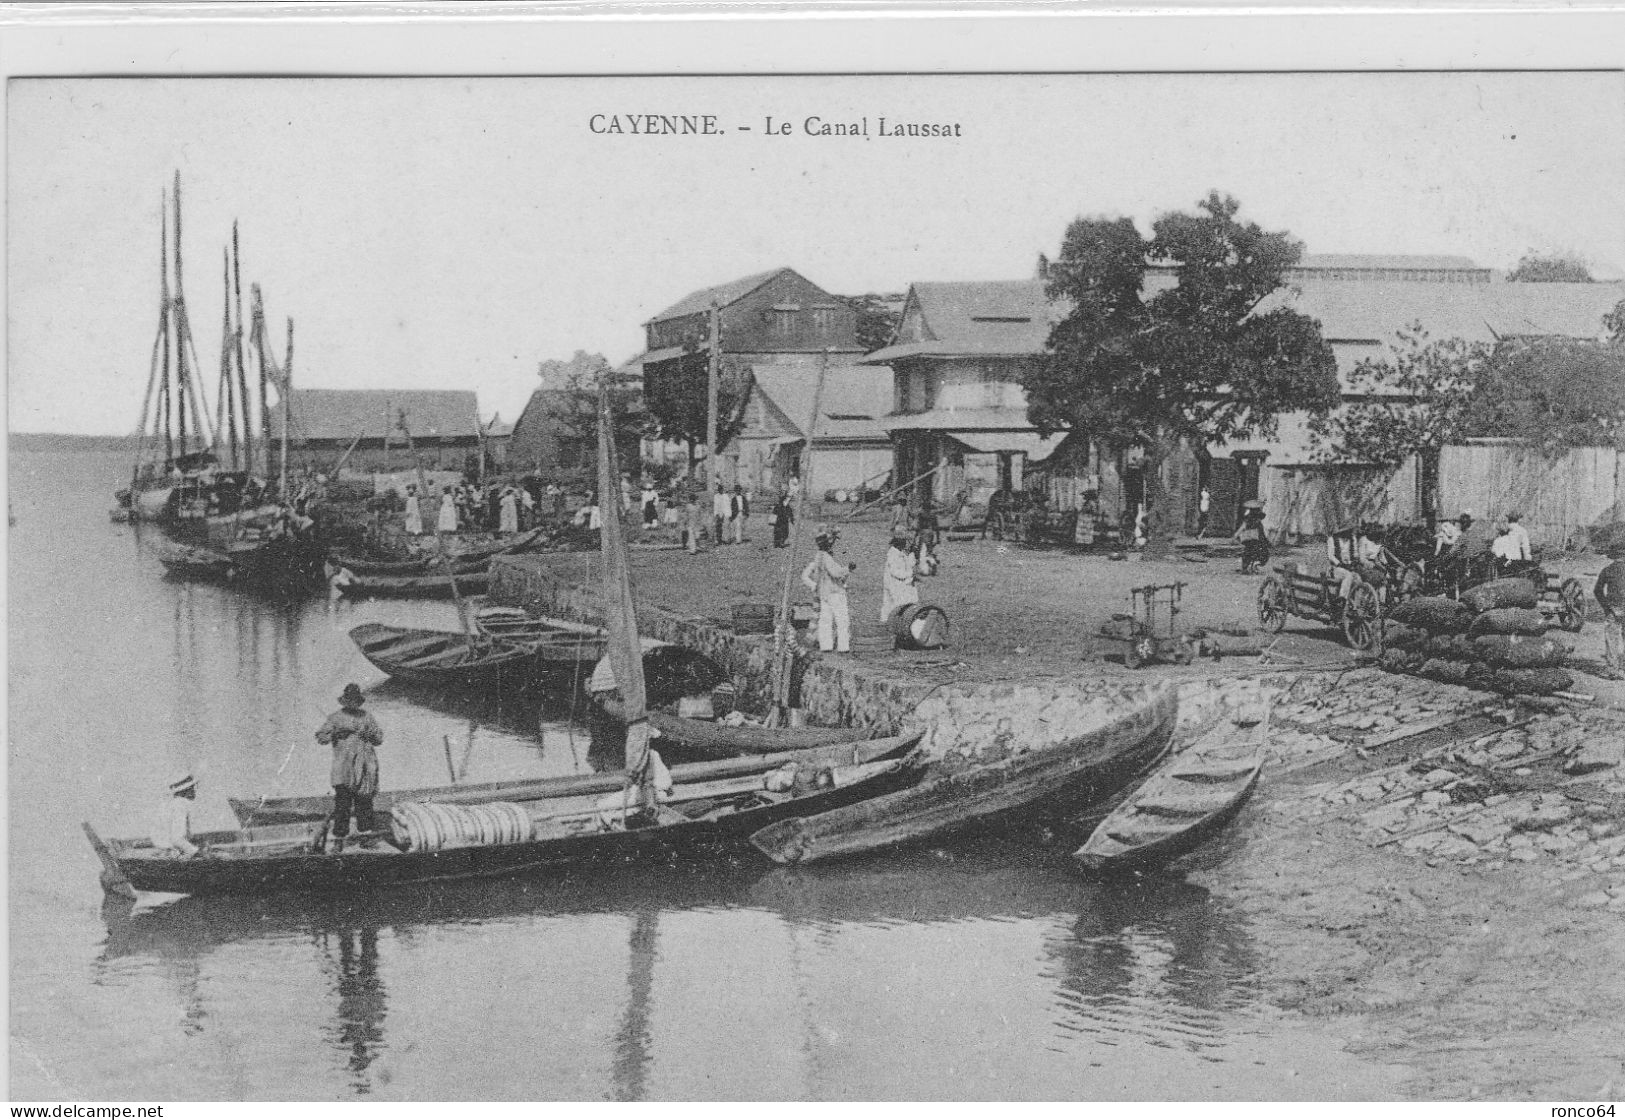 CAYENNE, Le CANAL LAUSSAT. - Cayenne